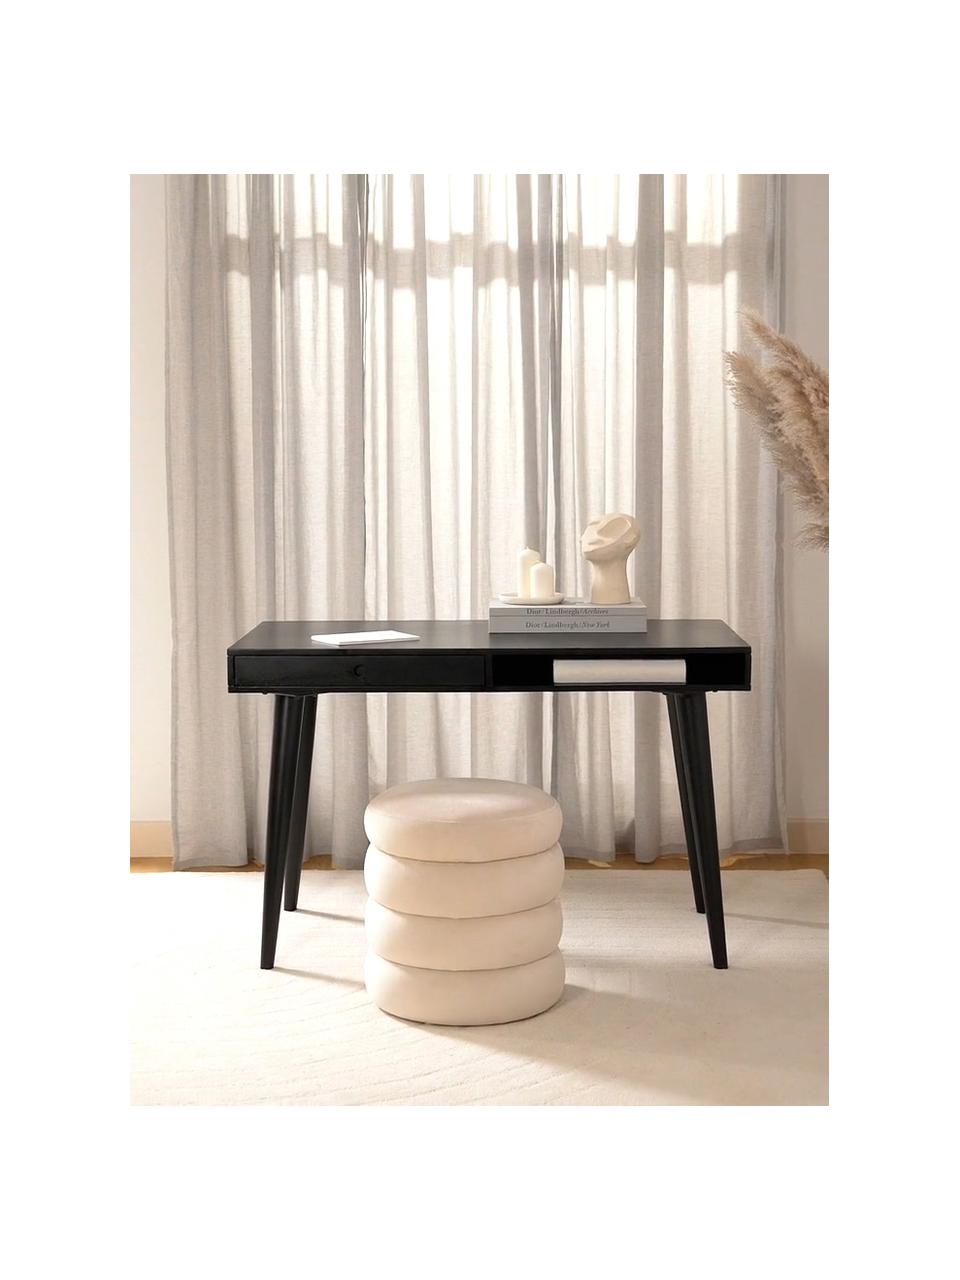 Pracovný stôl z masívu Tova, Mangové drevo, masívne, lakované

Tento produkt je vyrobený z trvalo udržateľného dreva s certifikátom FSC®., Mangové drevo, čierne lakované, Š 117 x H 60 cm